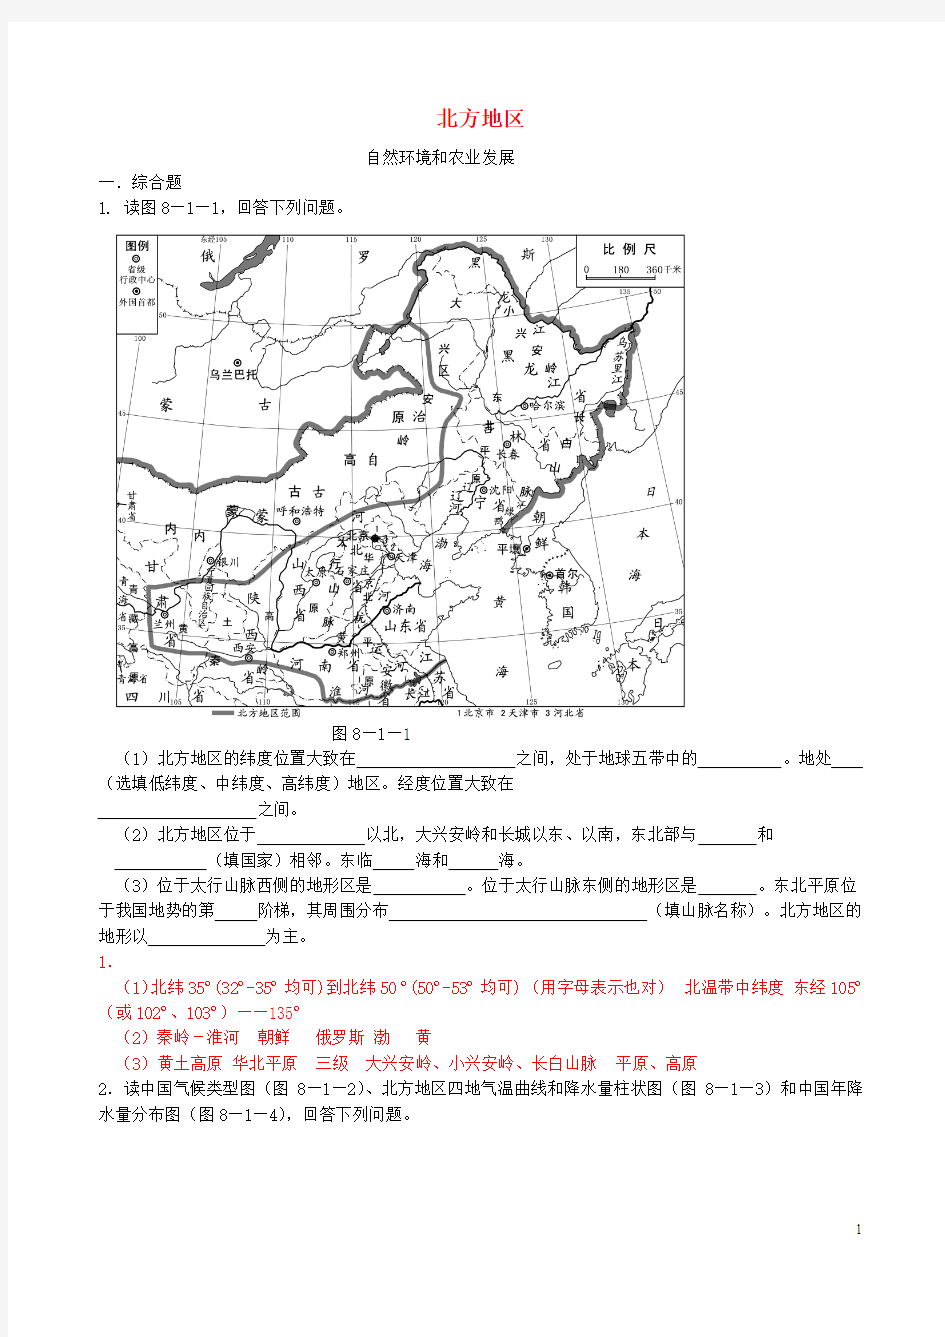 七年级地理下册 第七章 认识中国的地理区域 北方地区精选练习 中图版